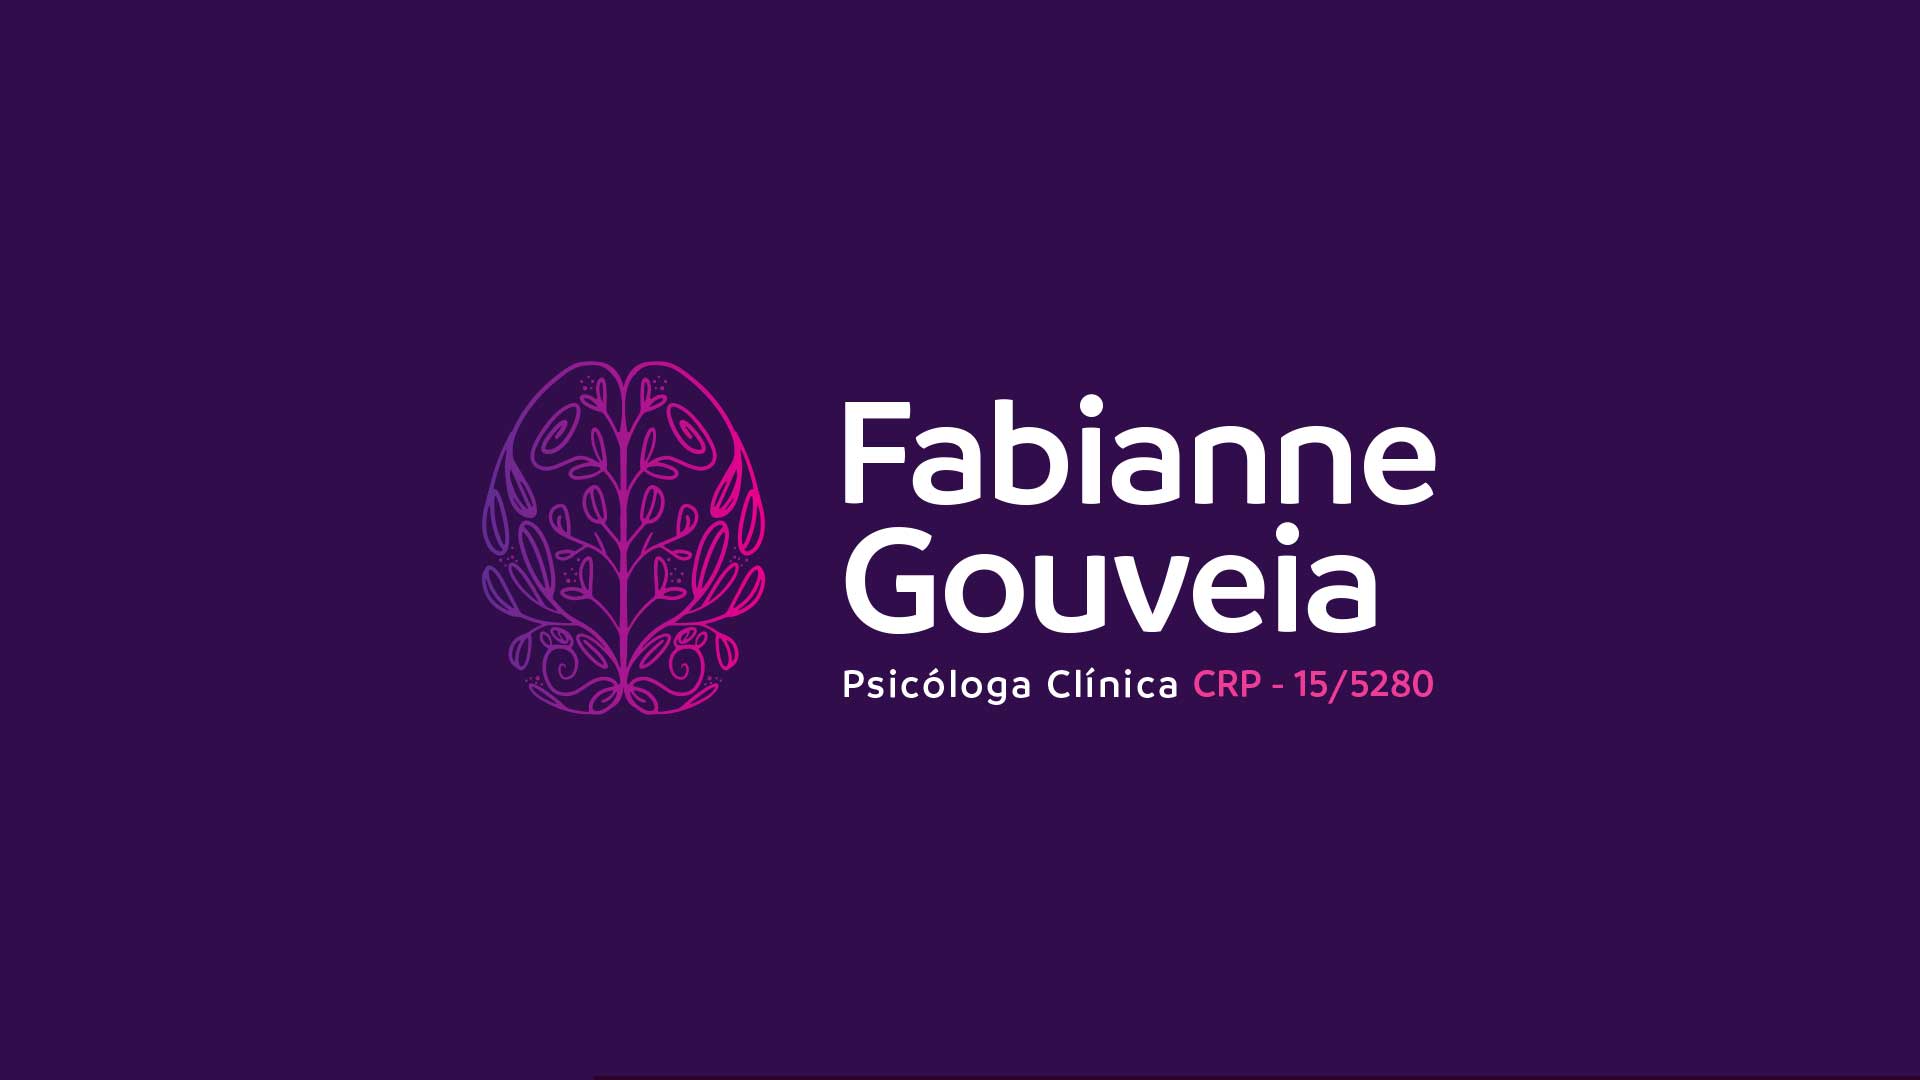 Fabianne Gouveia é uma psicóloga especialista em TCC - Terapia Cognitivo Comportamental e Pós-Graduada em Neuropisicologia Clínica. A psicóloga queria que o projeto tivesse uma representação de uma mente mais flúida, os pensamentos mais tranquila, algo como rosas ramando.